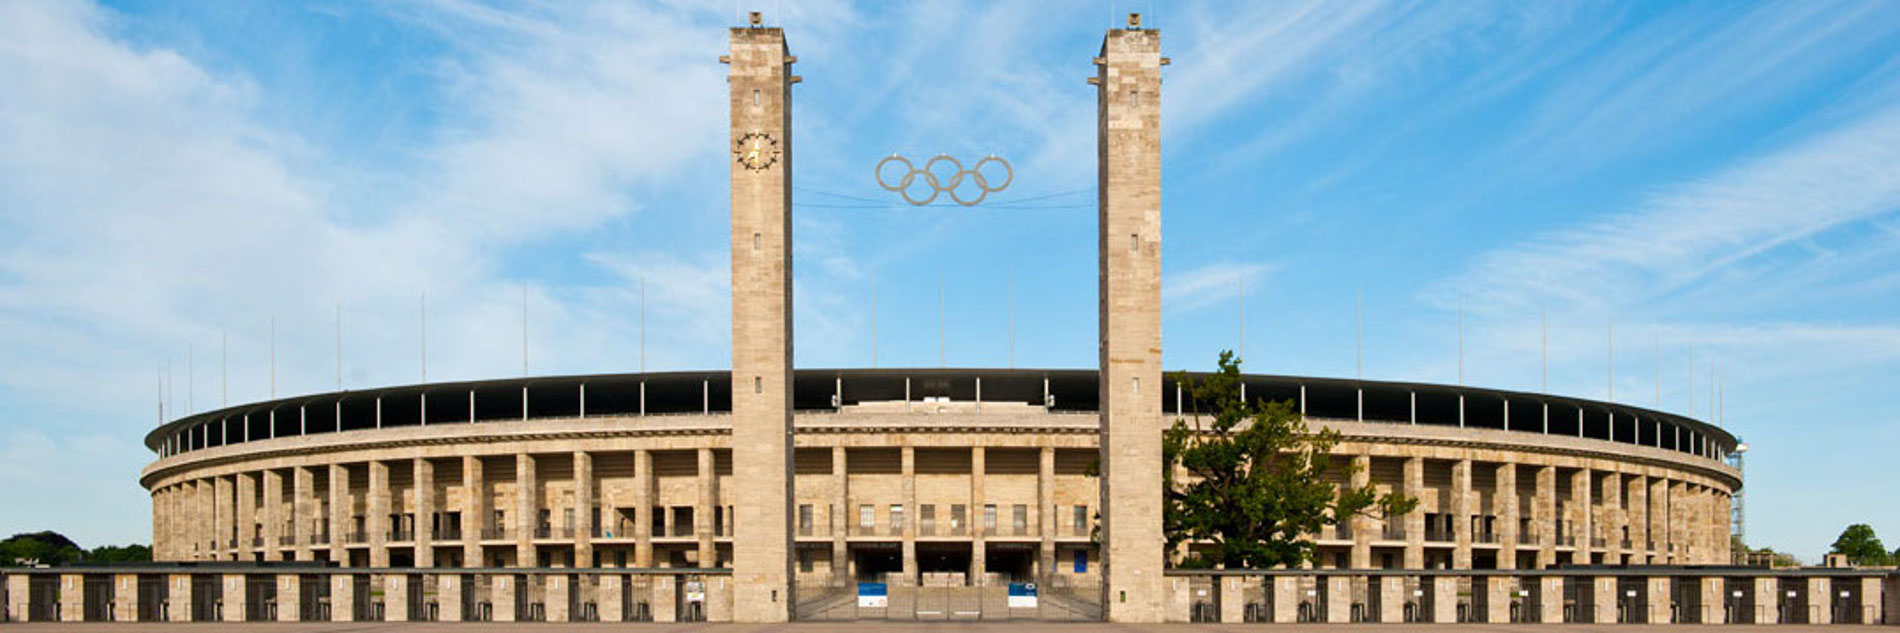 Der Haupteingang (Osttor) vom Olympiastadion Berlin vor blauem Himmel von außen fotografiert. Zwischen zwei Türmen sind die fünf olympischen Ringe sowie die Stadionränge von hinten zu sehen.